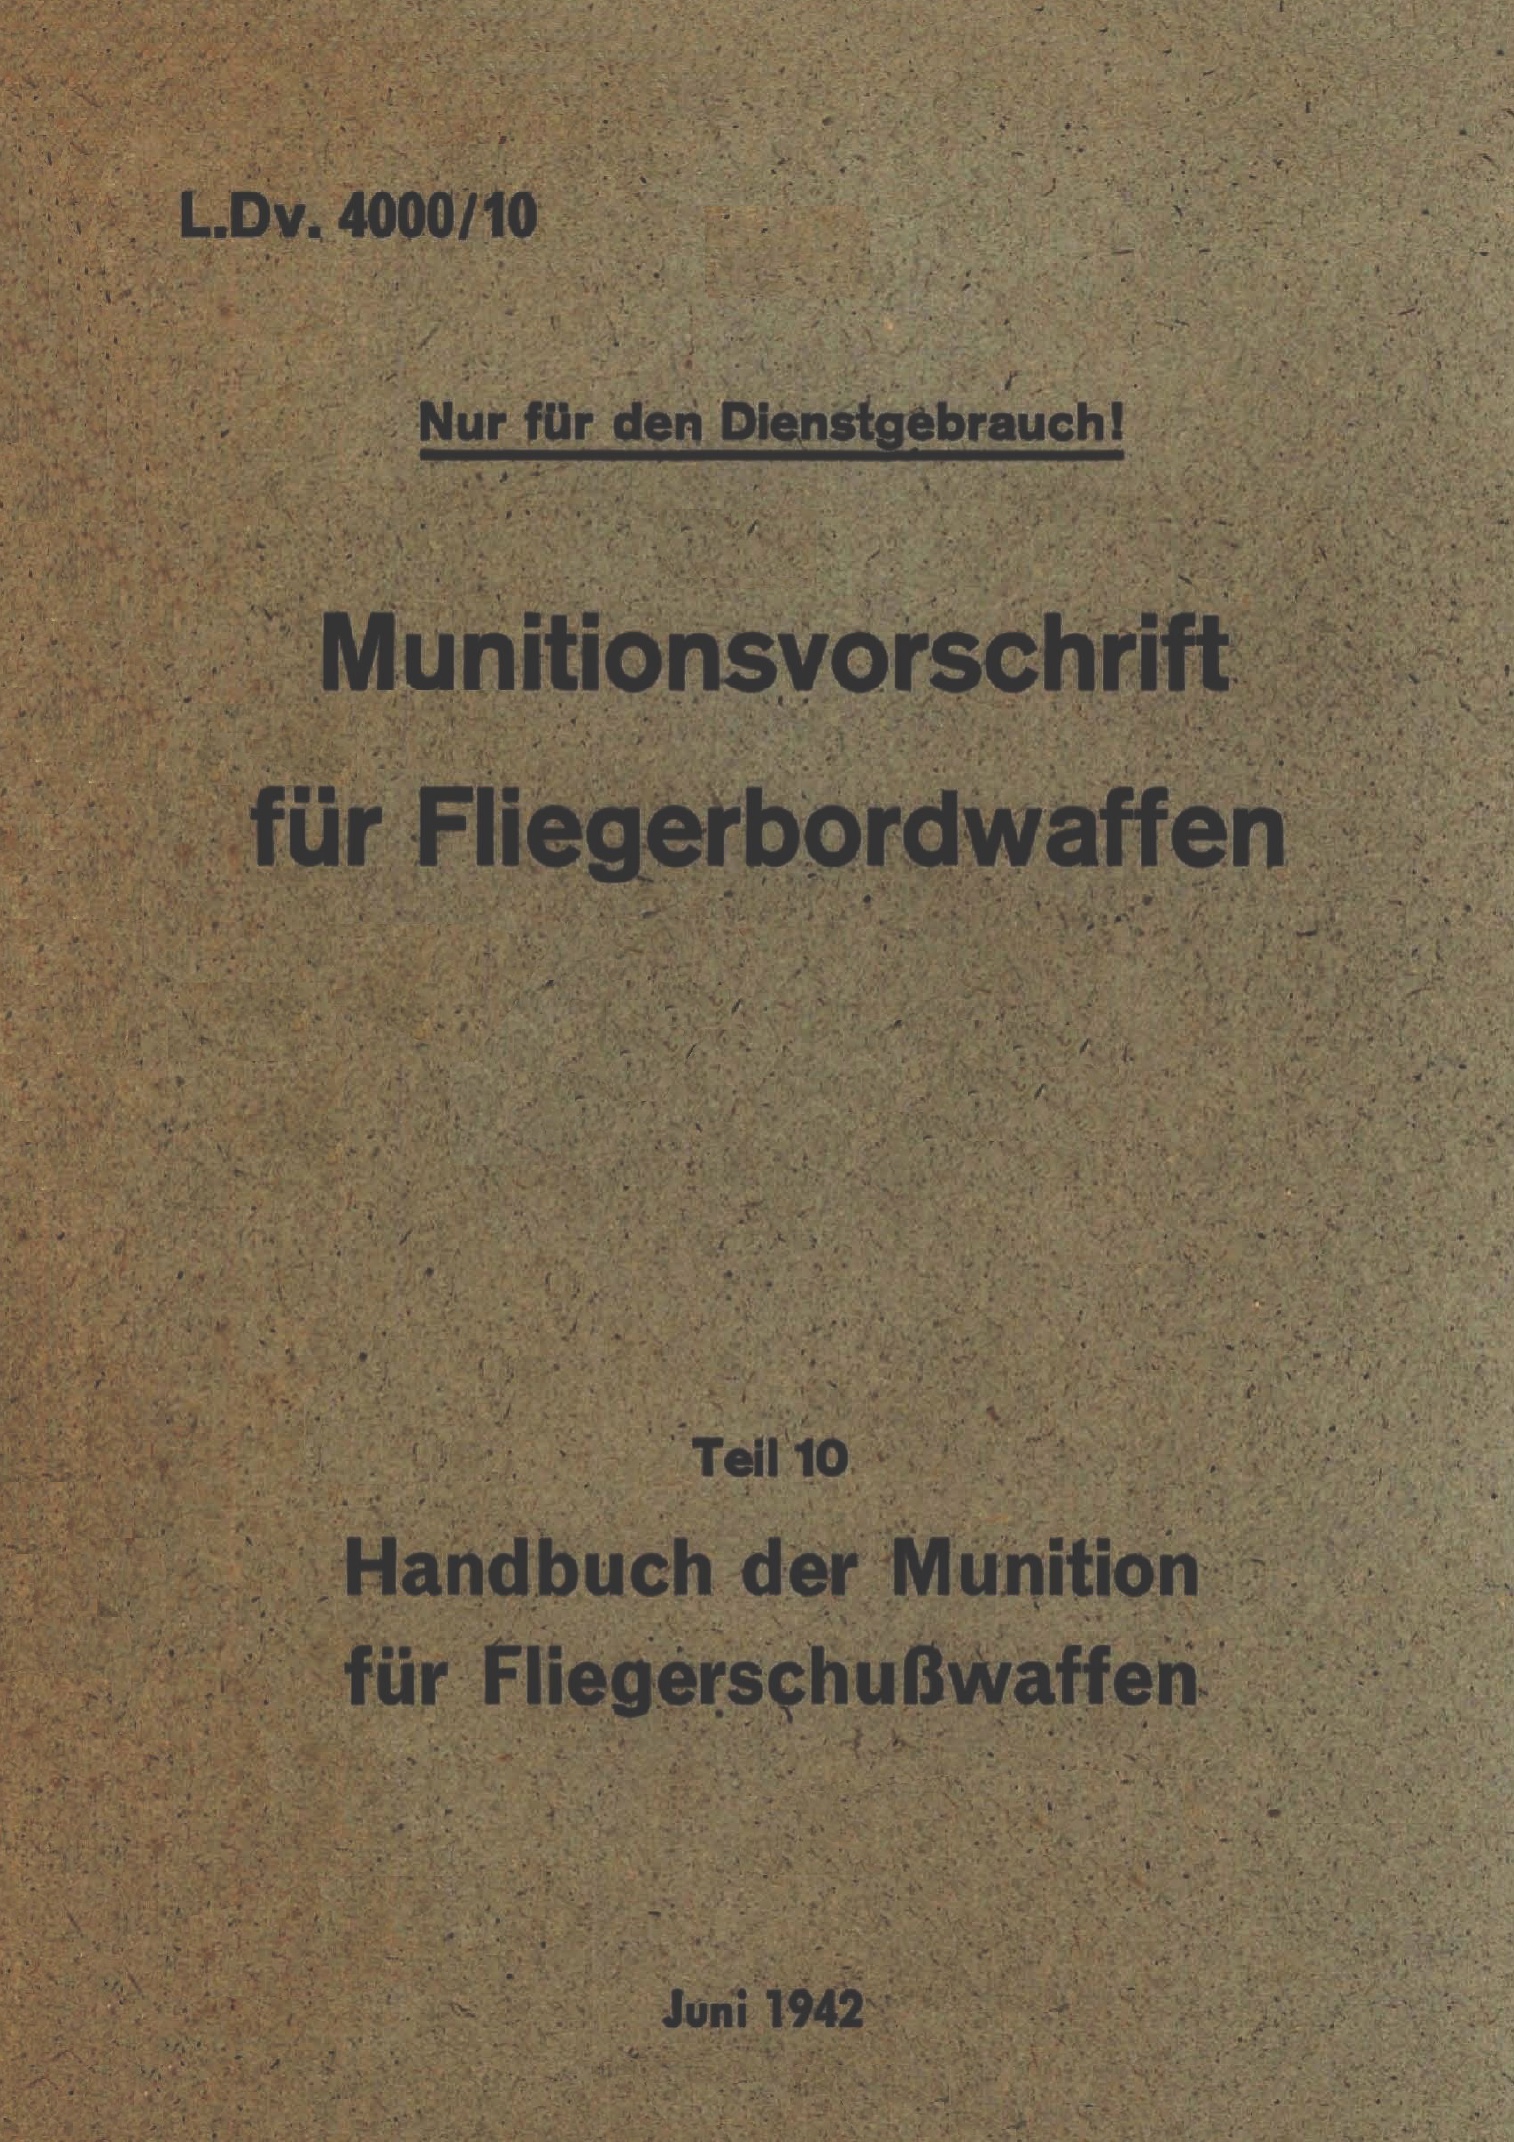 ESERCITO GERMANIA - Munitionsvorschrift fur Fliegerbordwaffen 1942 germ DT - <b>DOWNLOAD</b>